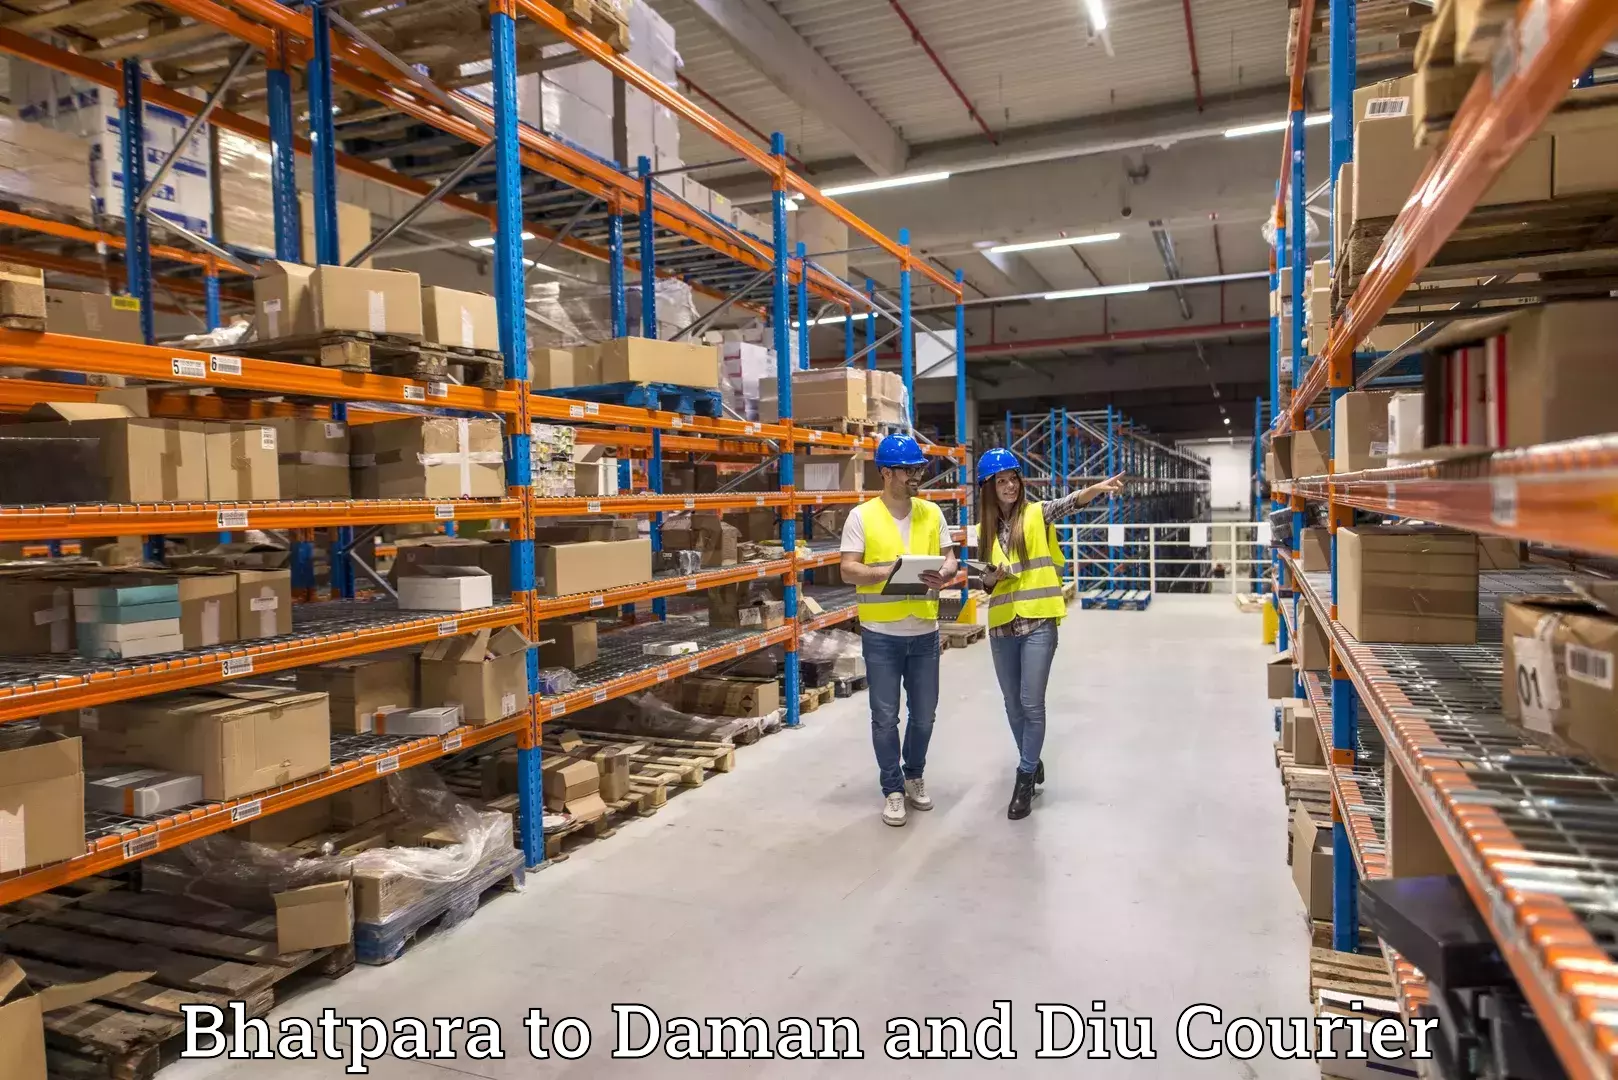 High-performance logistics Bhatpara to Daman and Diu